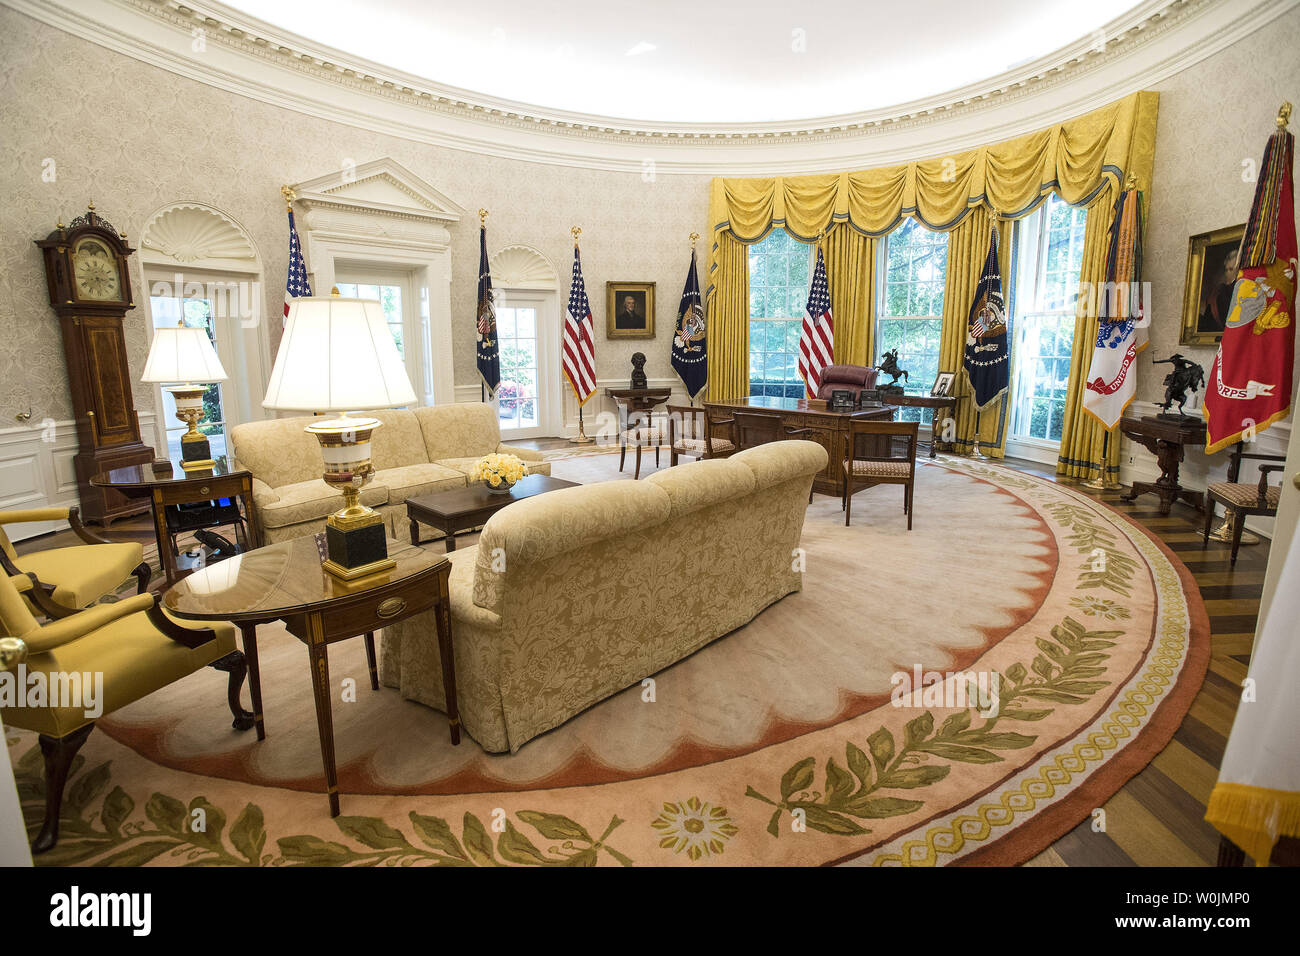 Das Oval Office ist folgenden Updates und Erneuerungen im Weißen Haus in  Washington, D.C. am 22. August 2017 gesehen. Der Westflügel wurde kürzlich  renoviert, Verbesserung und Aktualisierung der HVAC- und IT-Systeme sowie